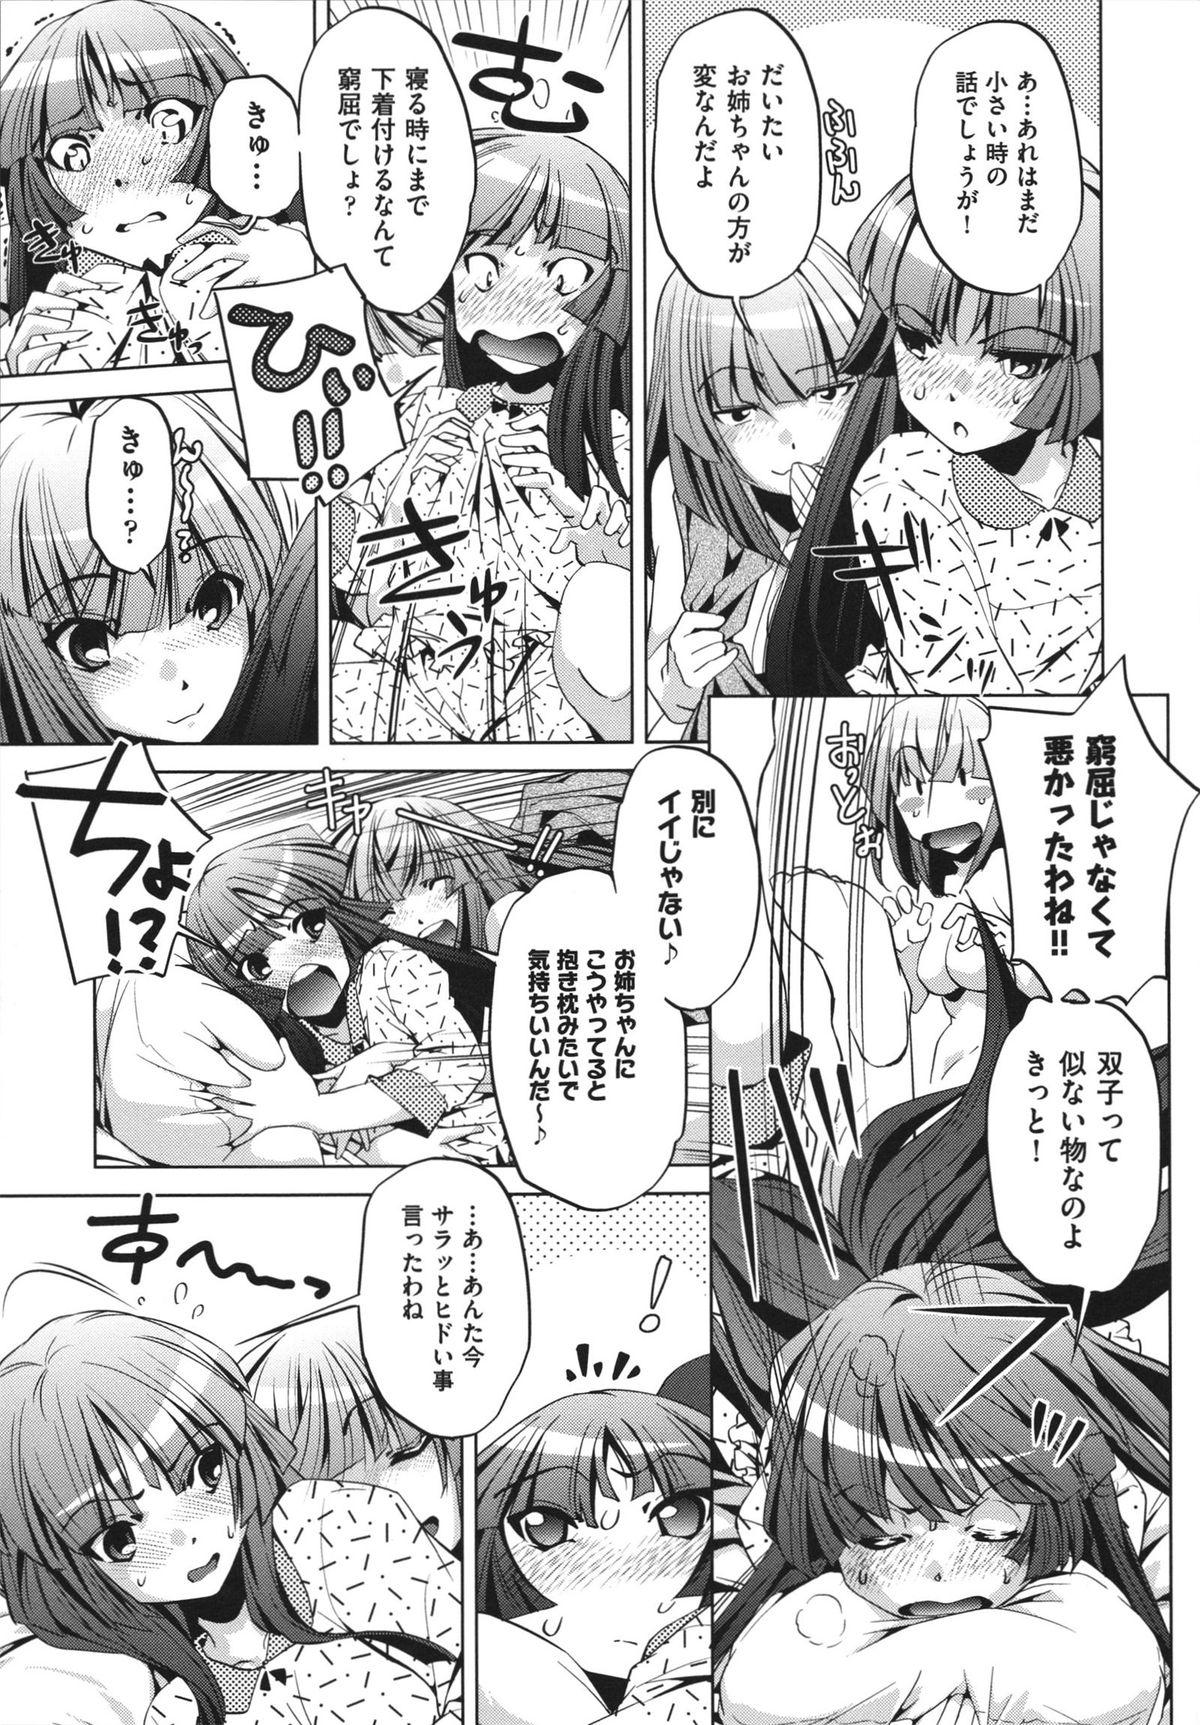 [Ootori Ryuuji] Shokushu wa Yawarakana Chibusa ni Makitsuki Onna-tachi no Ana wo Kakimidasu - Feeler coils around a soft breast and violates women's hole. 58